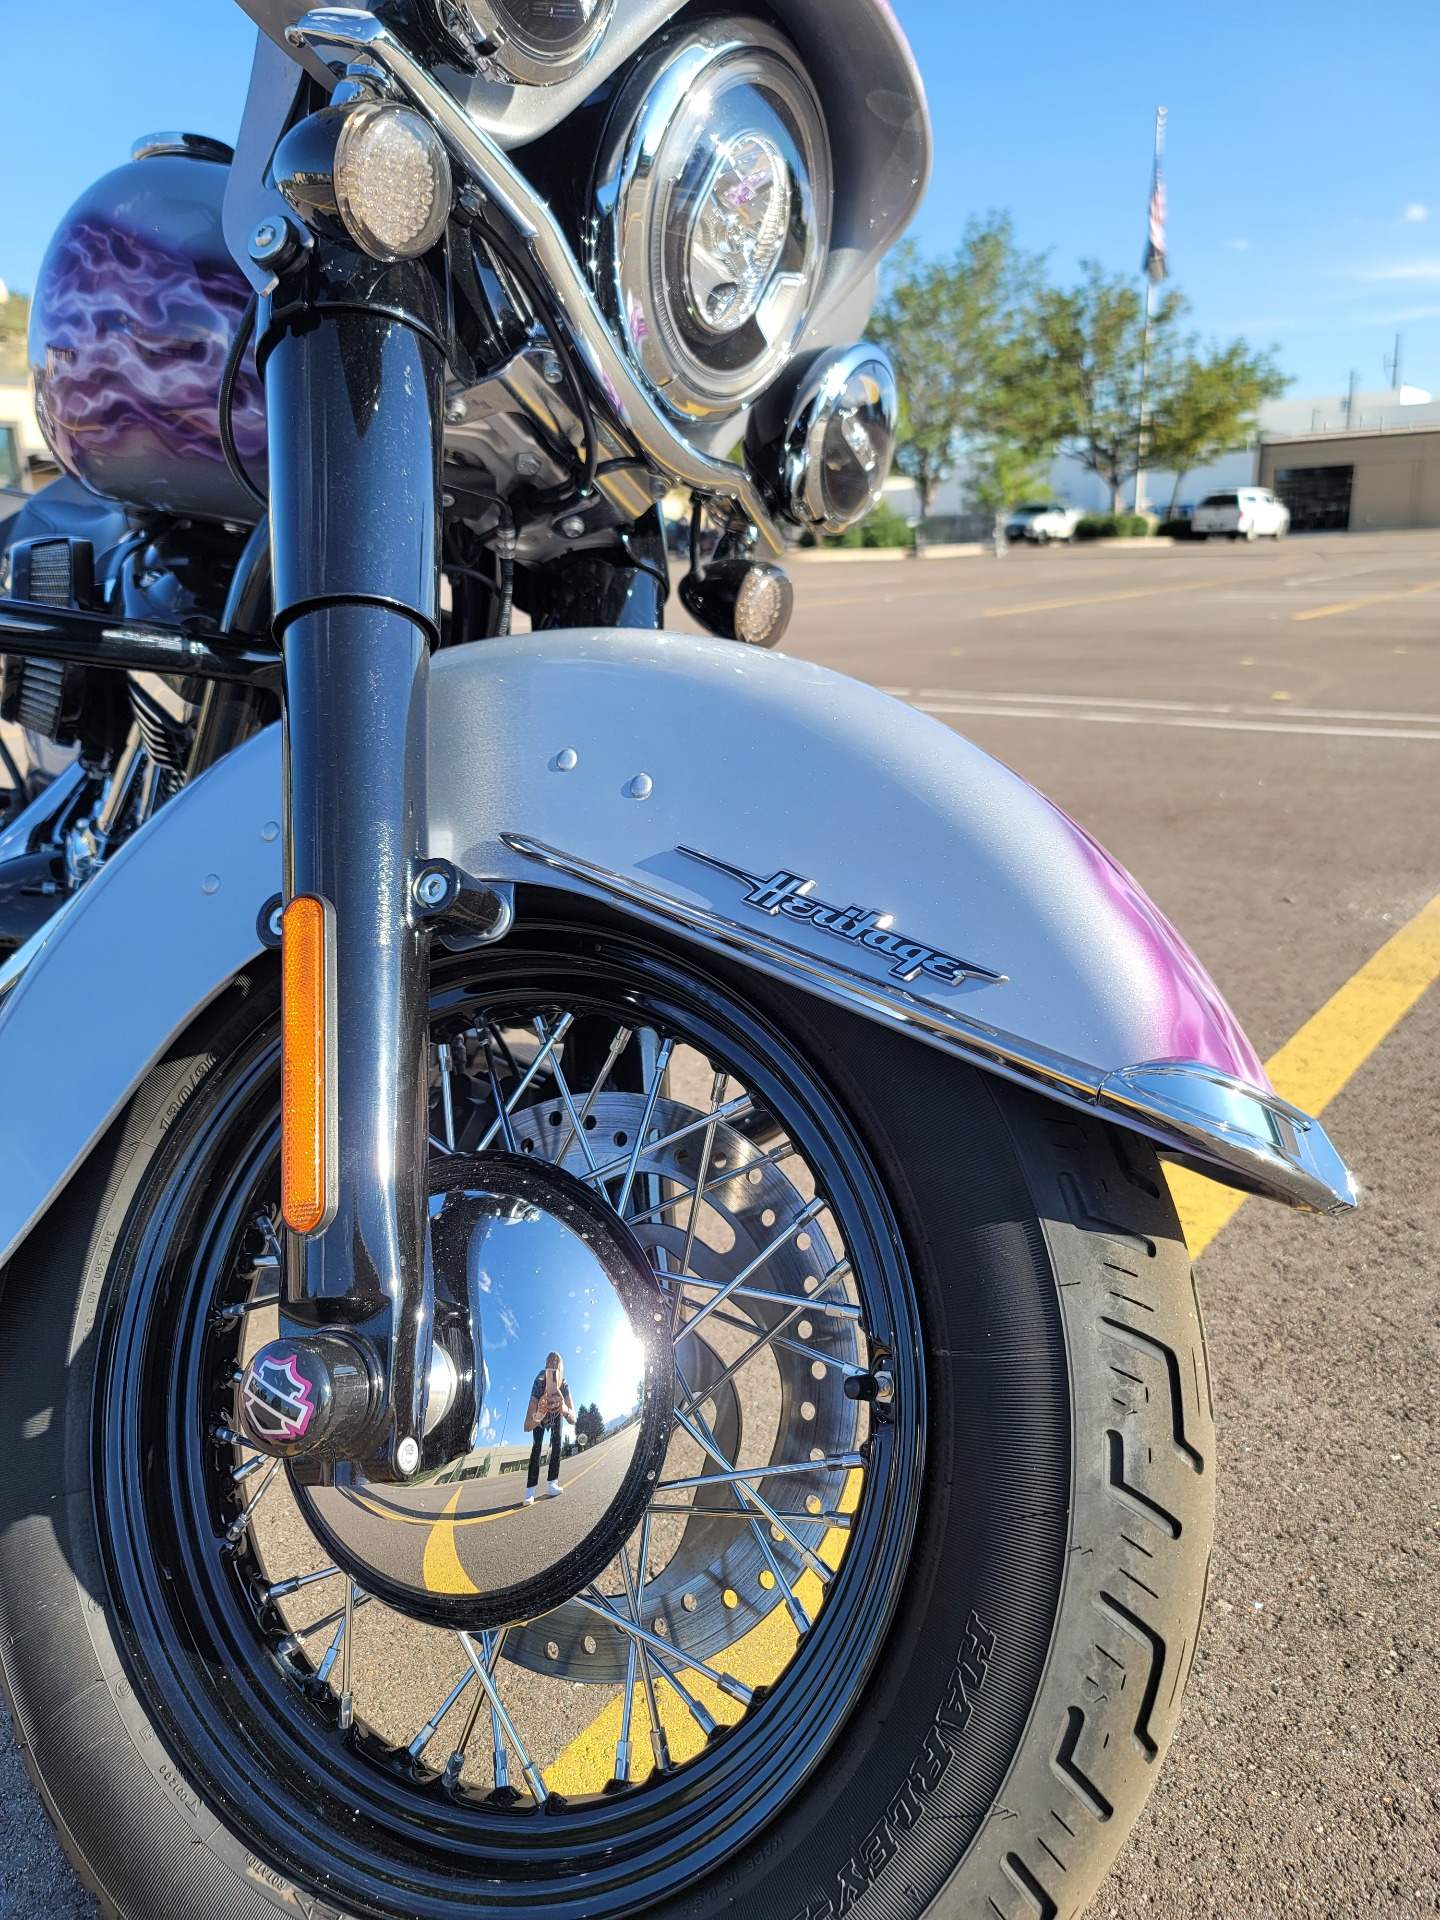 2019 Harley-Davidson Heritage Classic 114 in Colorado Springs, Colorado - Photo 3